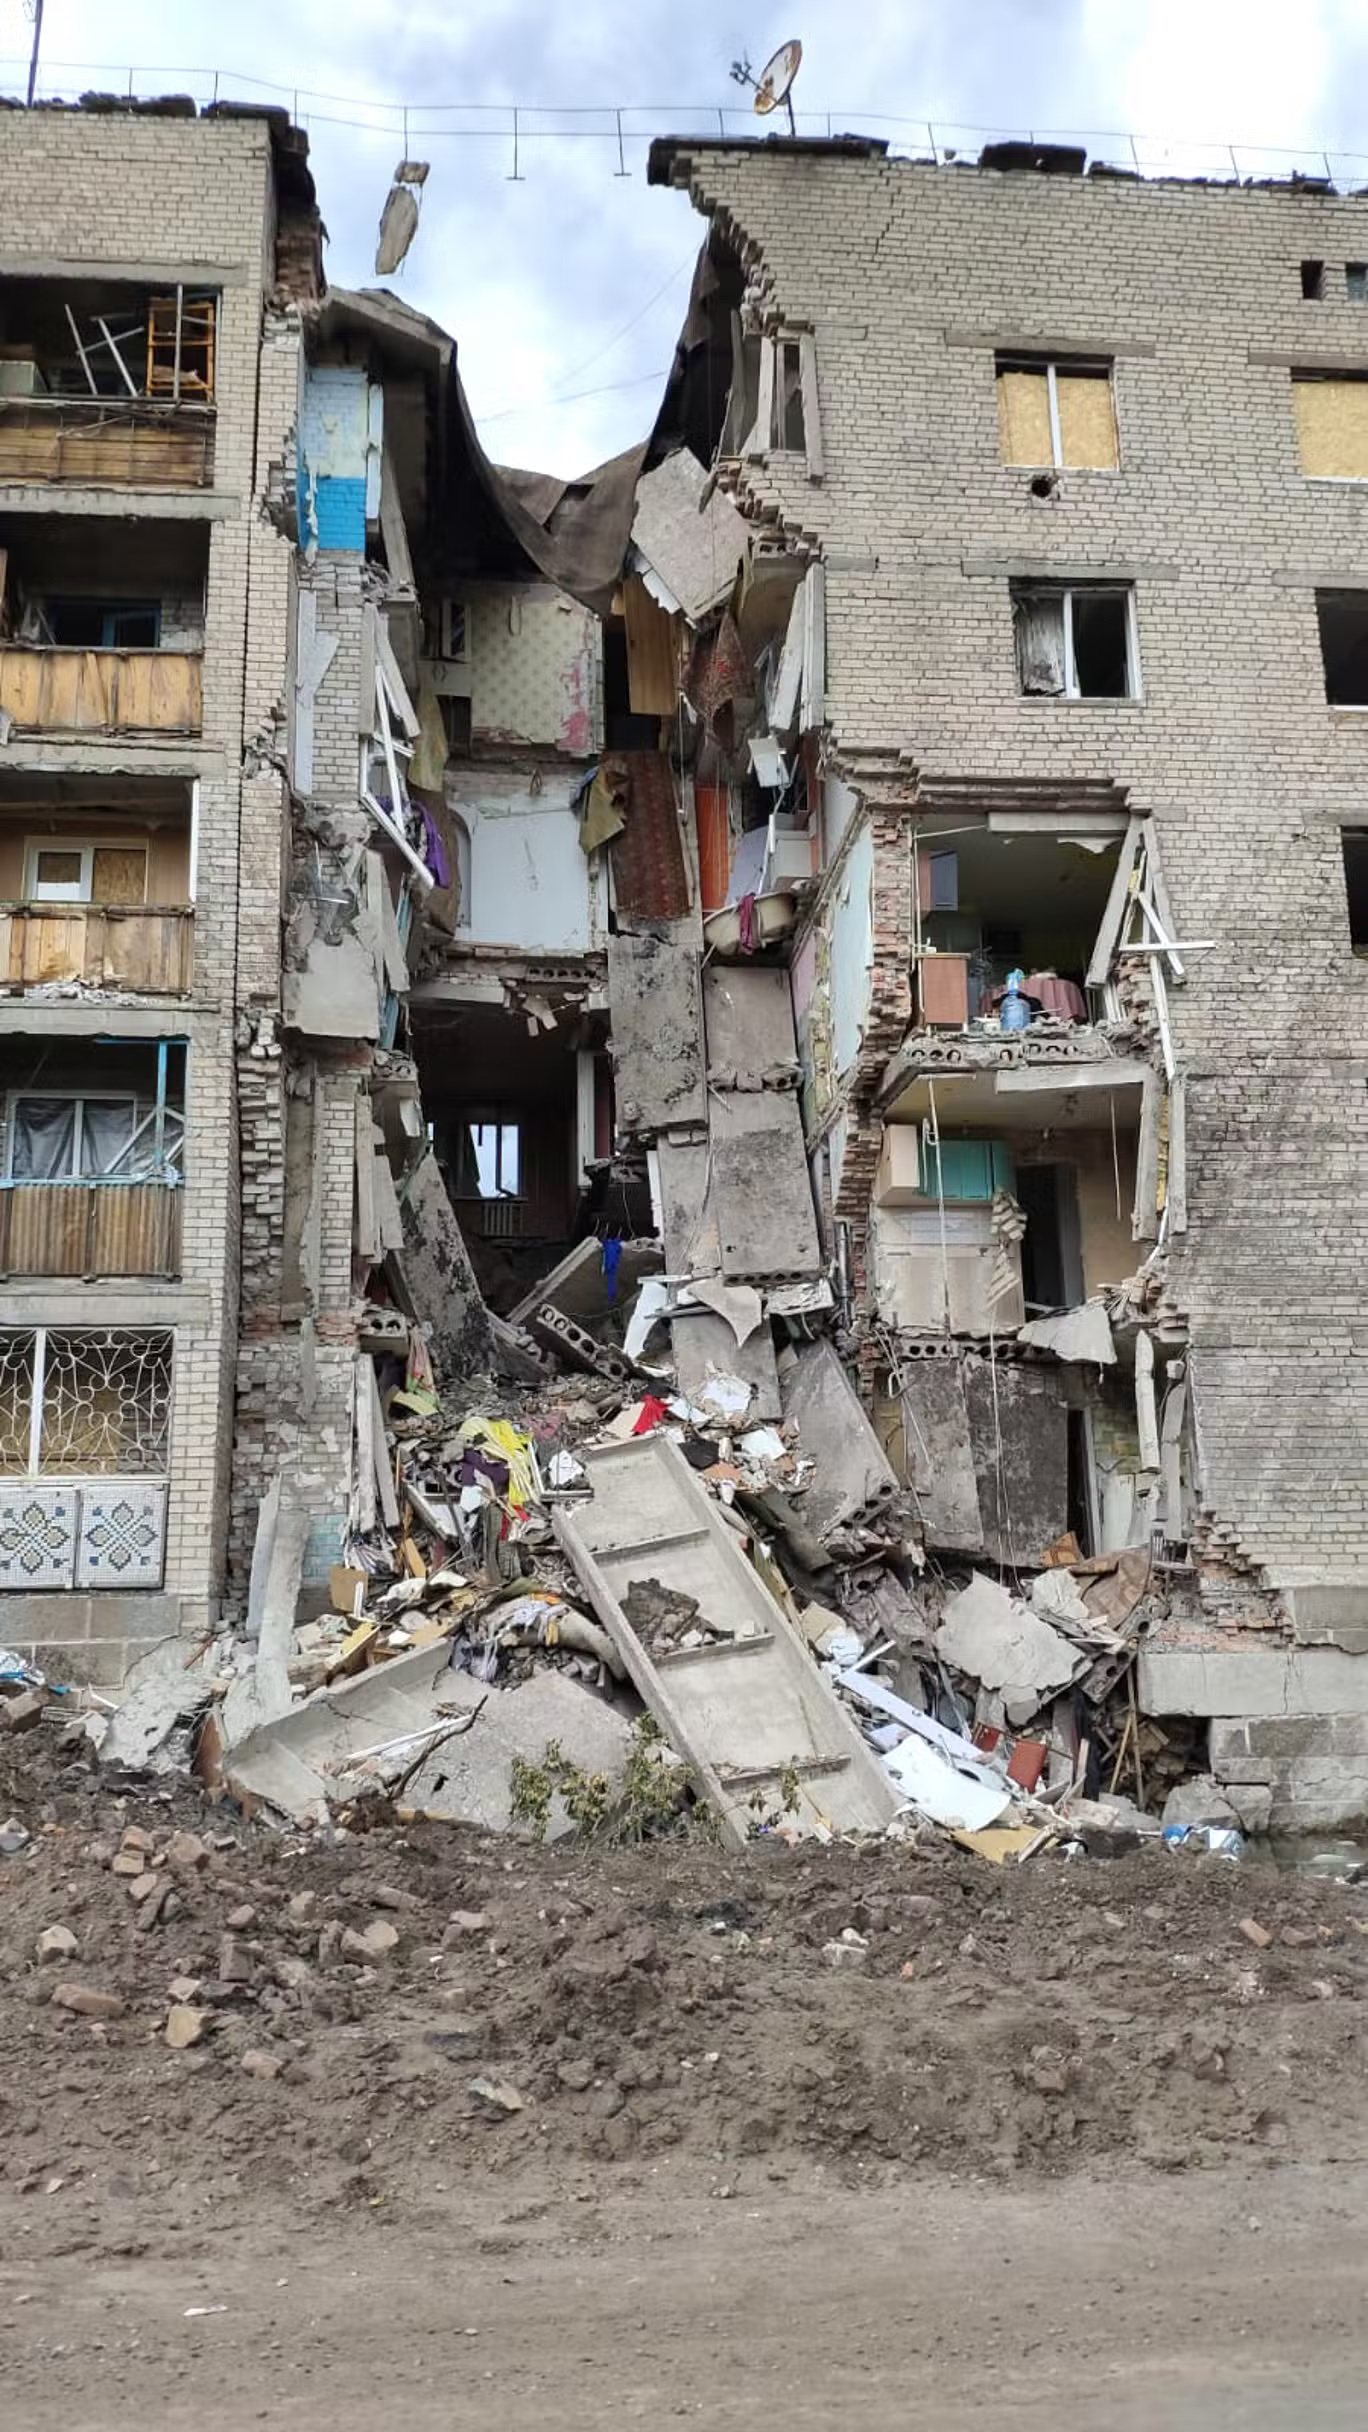 دمار تسببت به الهجمات الروسية في مدينة باخموت في شرق أوكرانيا (كيم سنغوبتا)